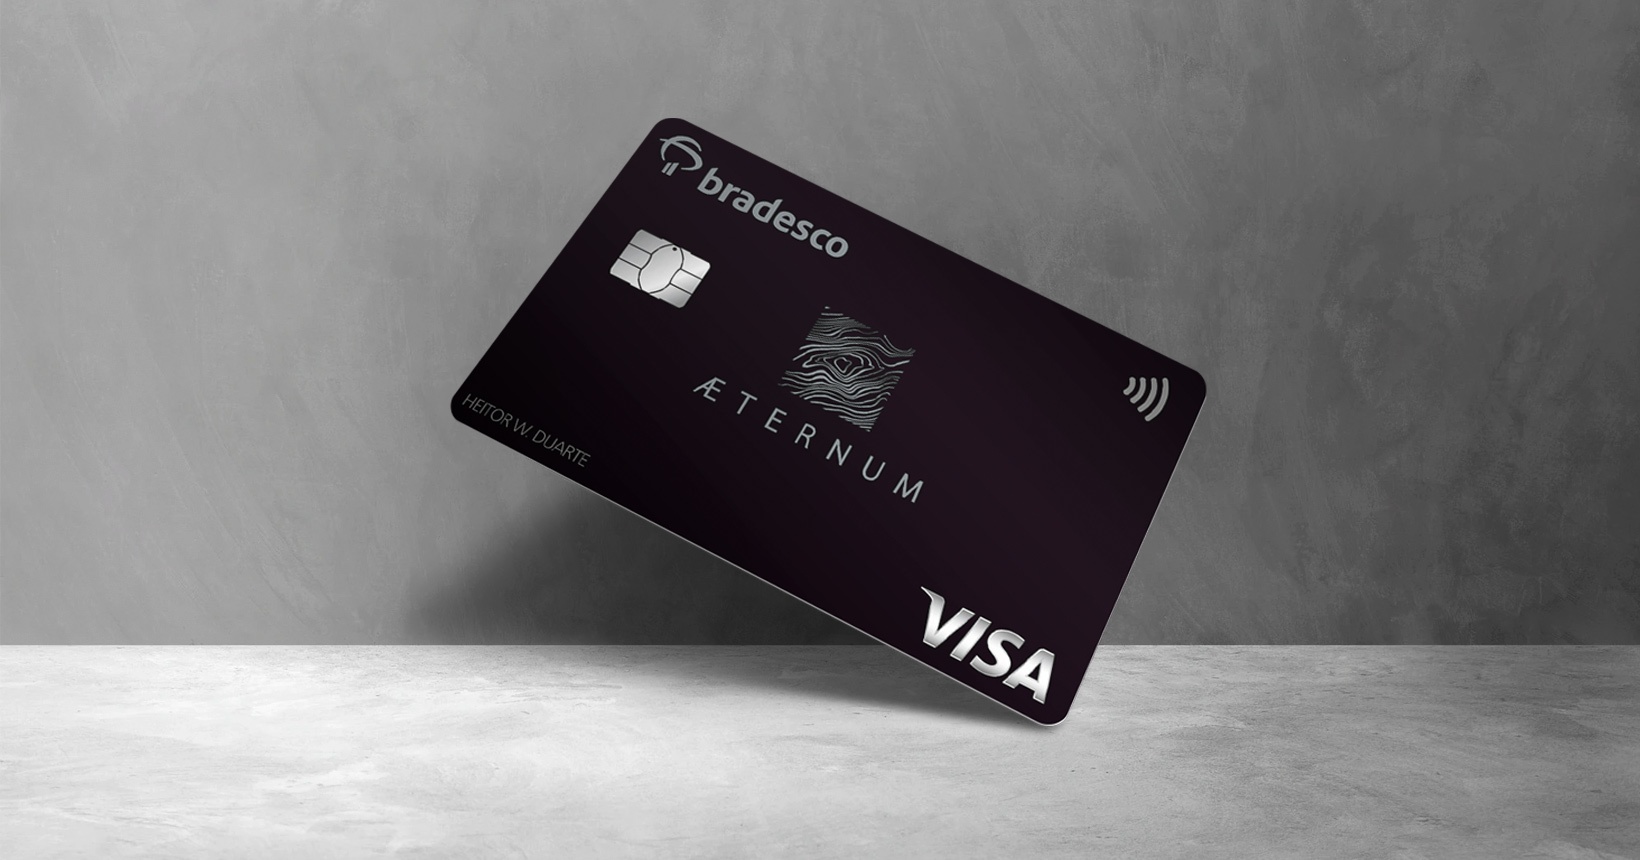 Porto Seguro Visa Infinite x Bradesco Aeternum Visa Infinite: qual é o  melhor cartão de crédito? - Página 2 - Falando de Viagem